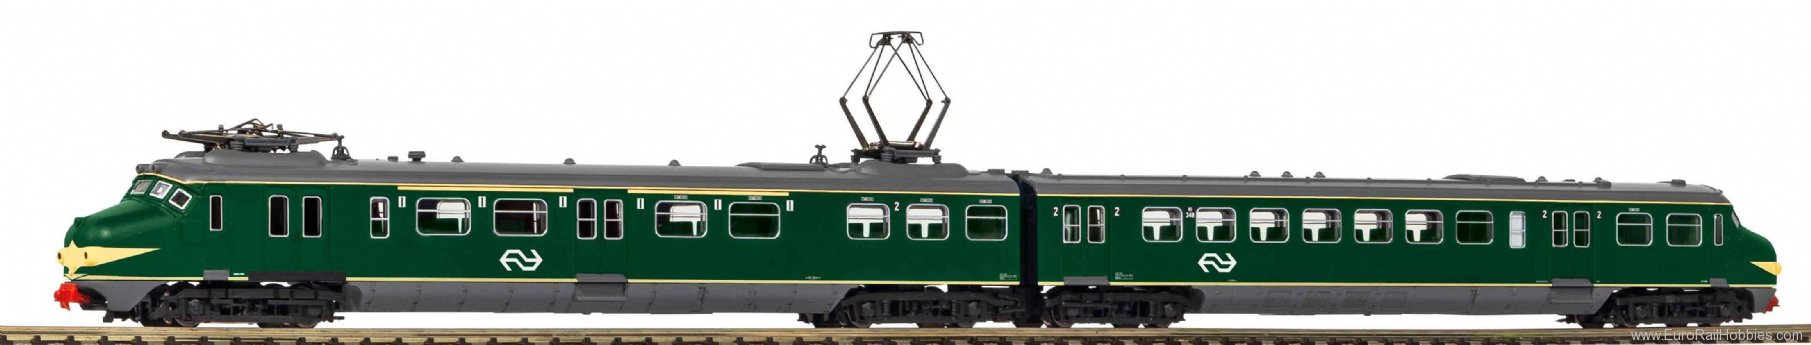 Piko 40284 N Sound electric railcar Hondekop NS IV, incl